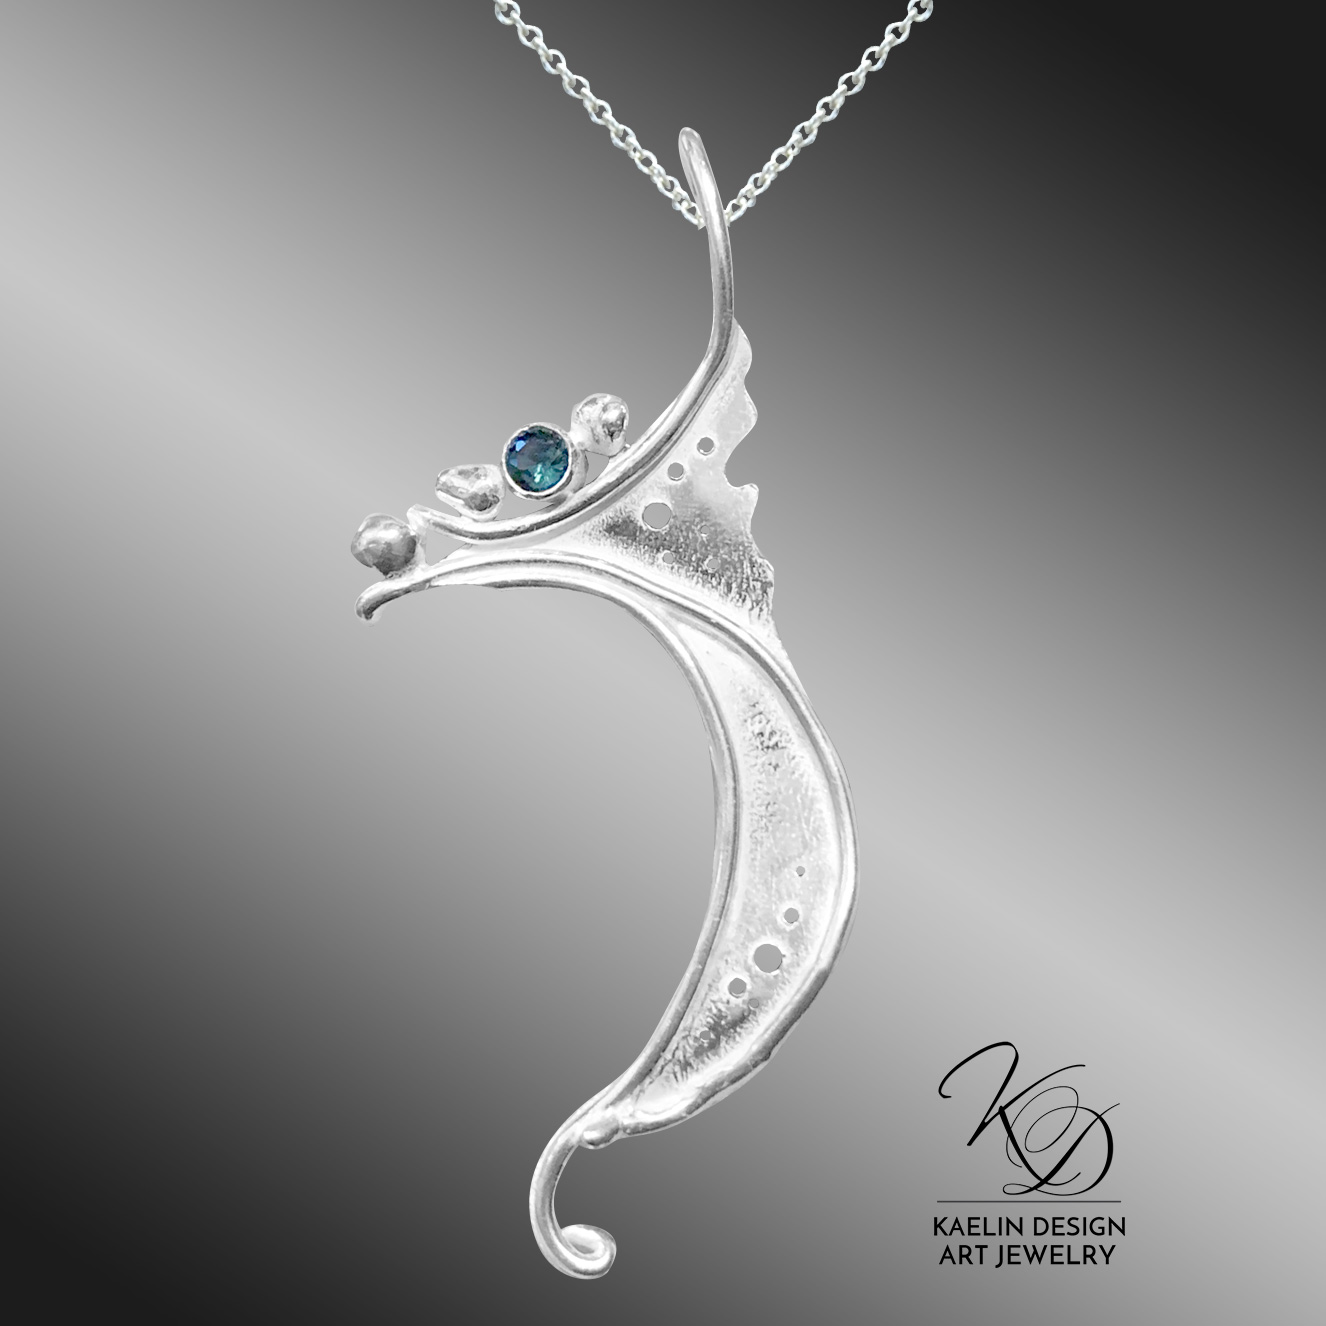 Ocean Breakwater Blue Topaz Art Jewelry Pendant by Kaelin Design